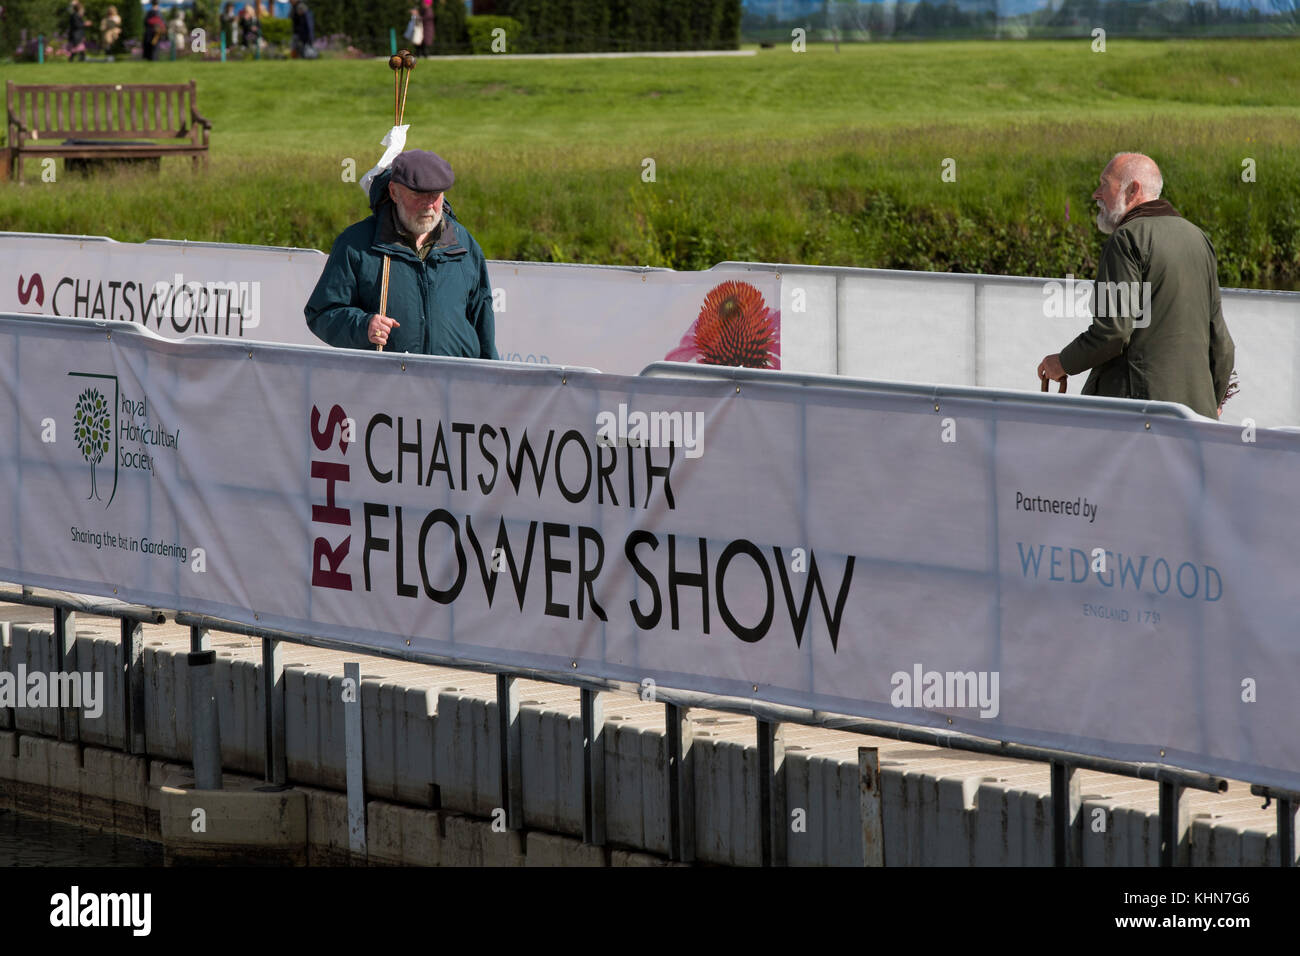 2 hommes au 1er Chatsworth RHS Flower Show traversent un pont temporaire pour obtenir de l'autre côté - Chatsworth House, Derbyshire, Angleterre, Royaume-Uni. Banque D'Images